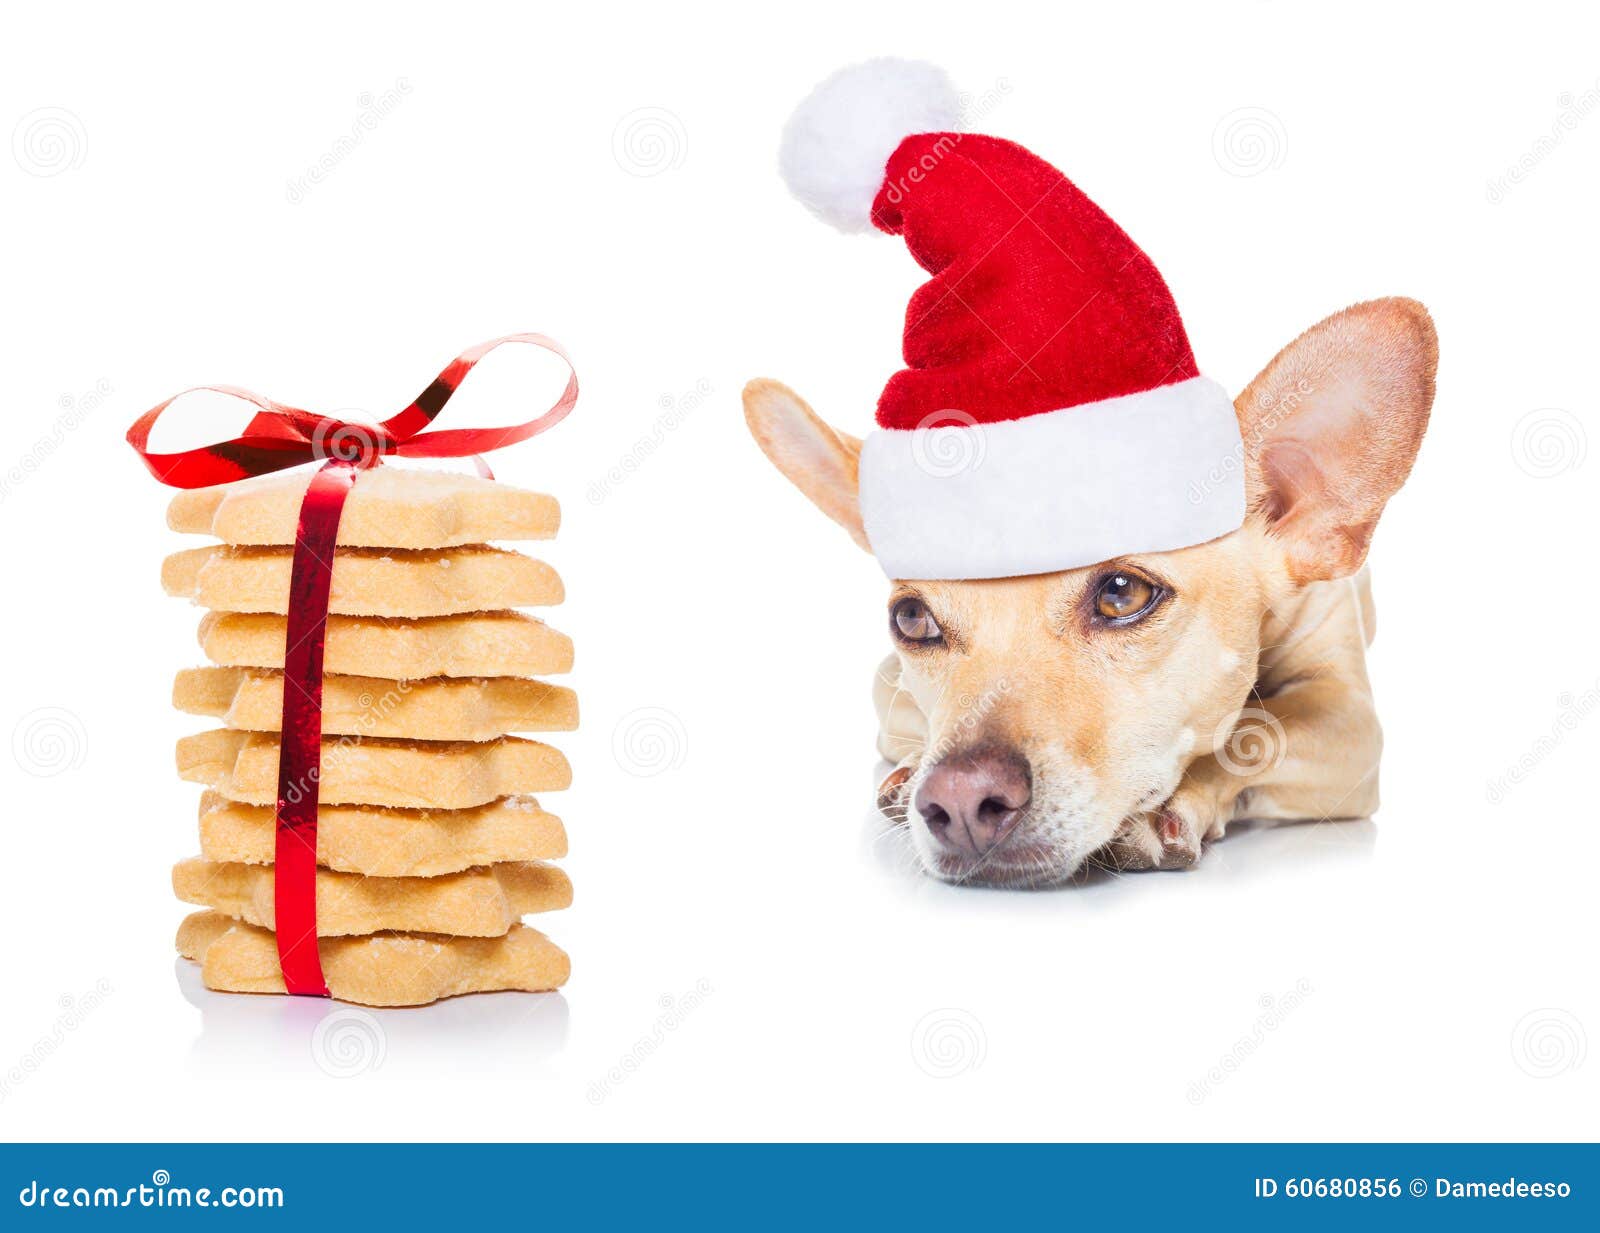 Christmas Cookies And Dog Stock Photo - Image: 60680856